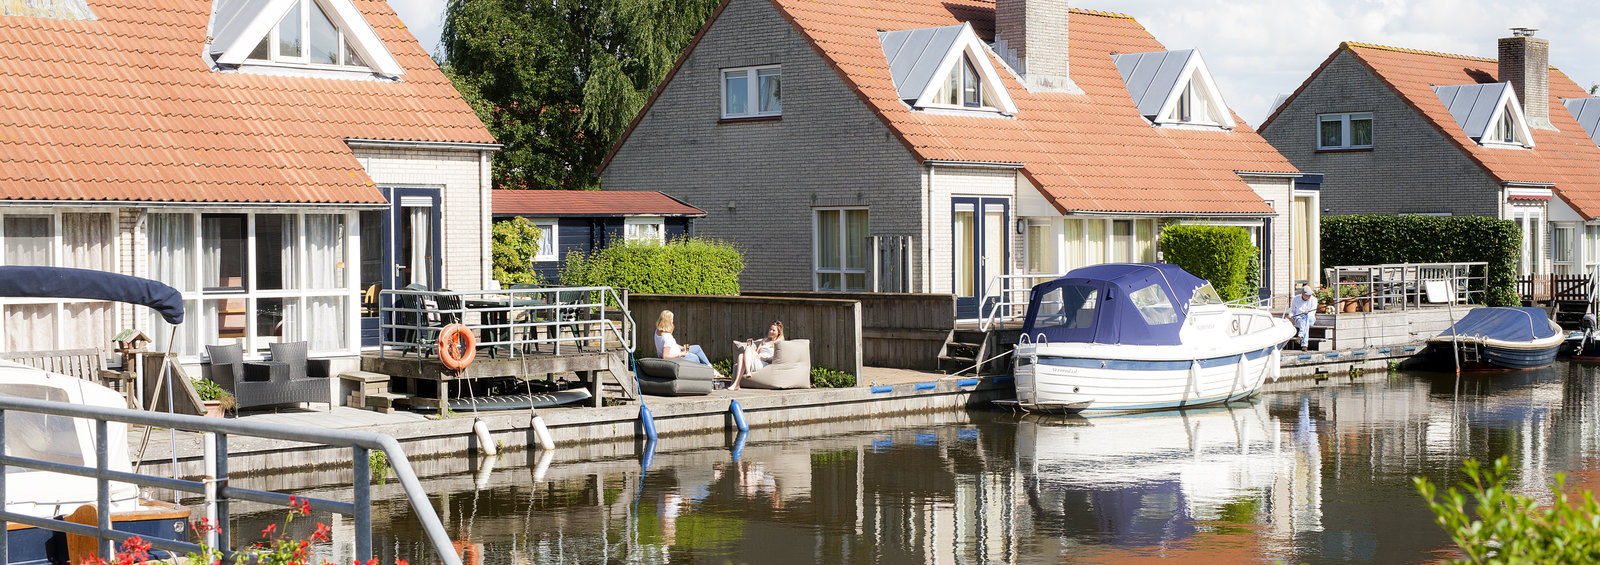 Vakantiehuis met sloep huren in Friesland